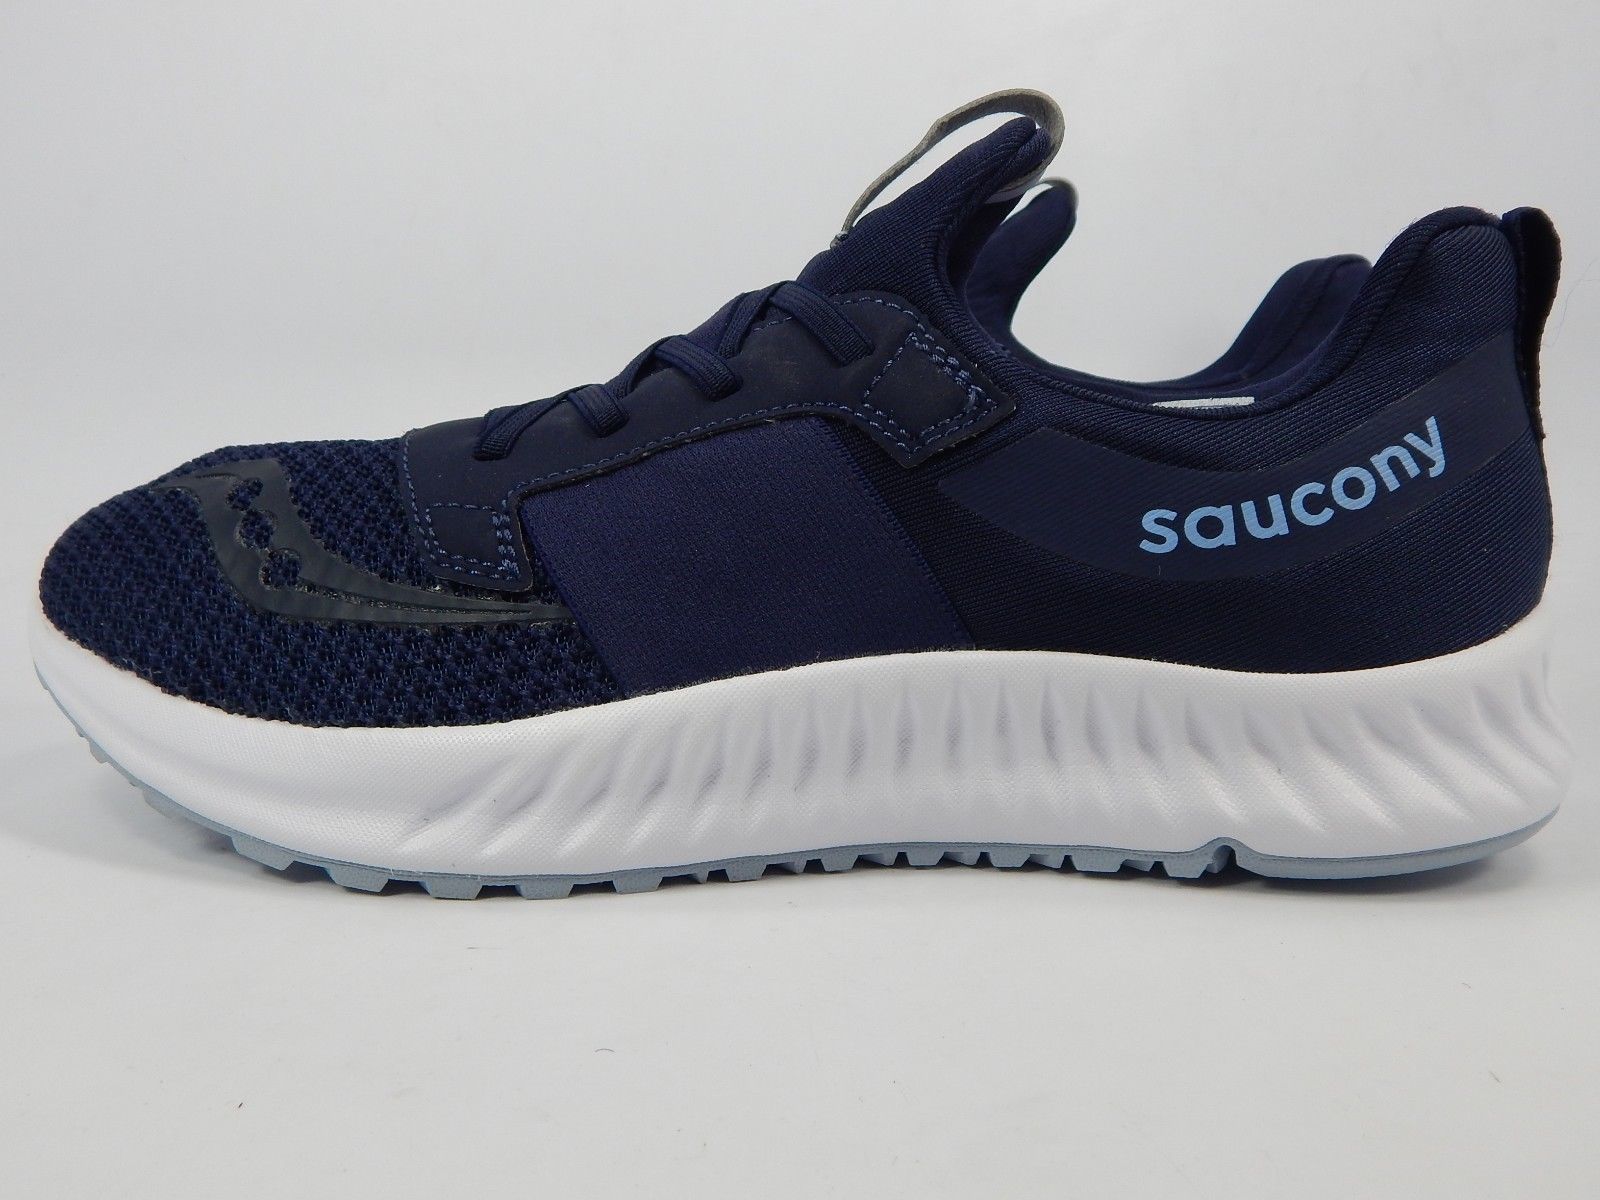 Saucony Stretch N Go Breeze Men's Shoes Size 9 M (D) EU 42.5 S40020-3 ...